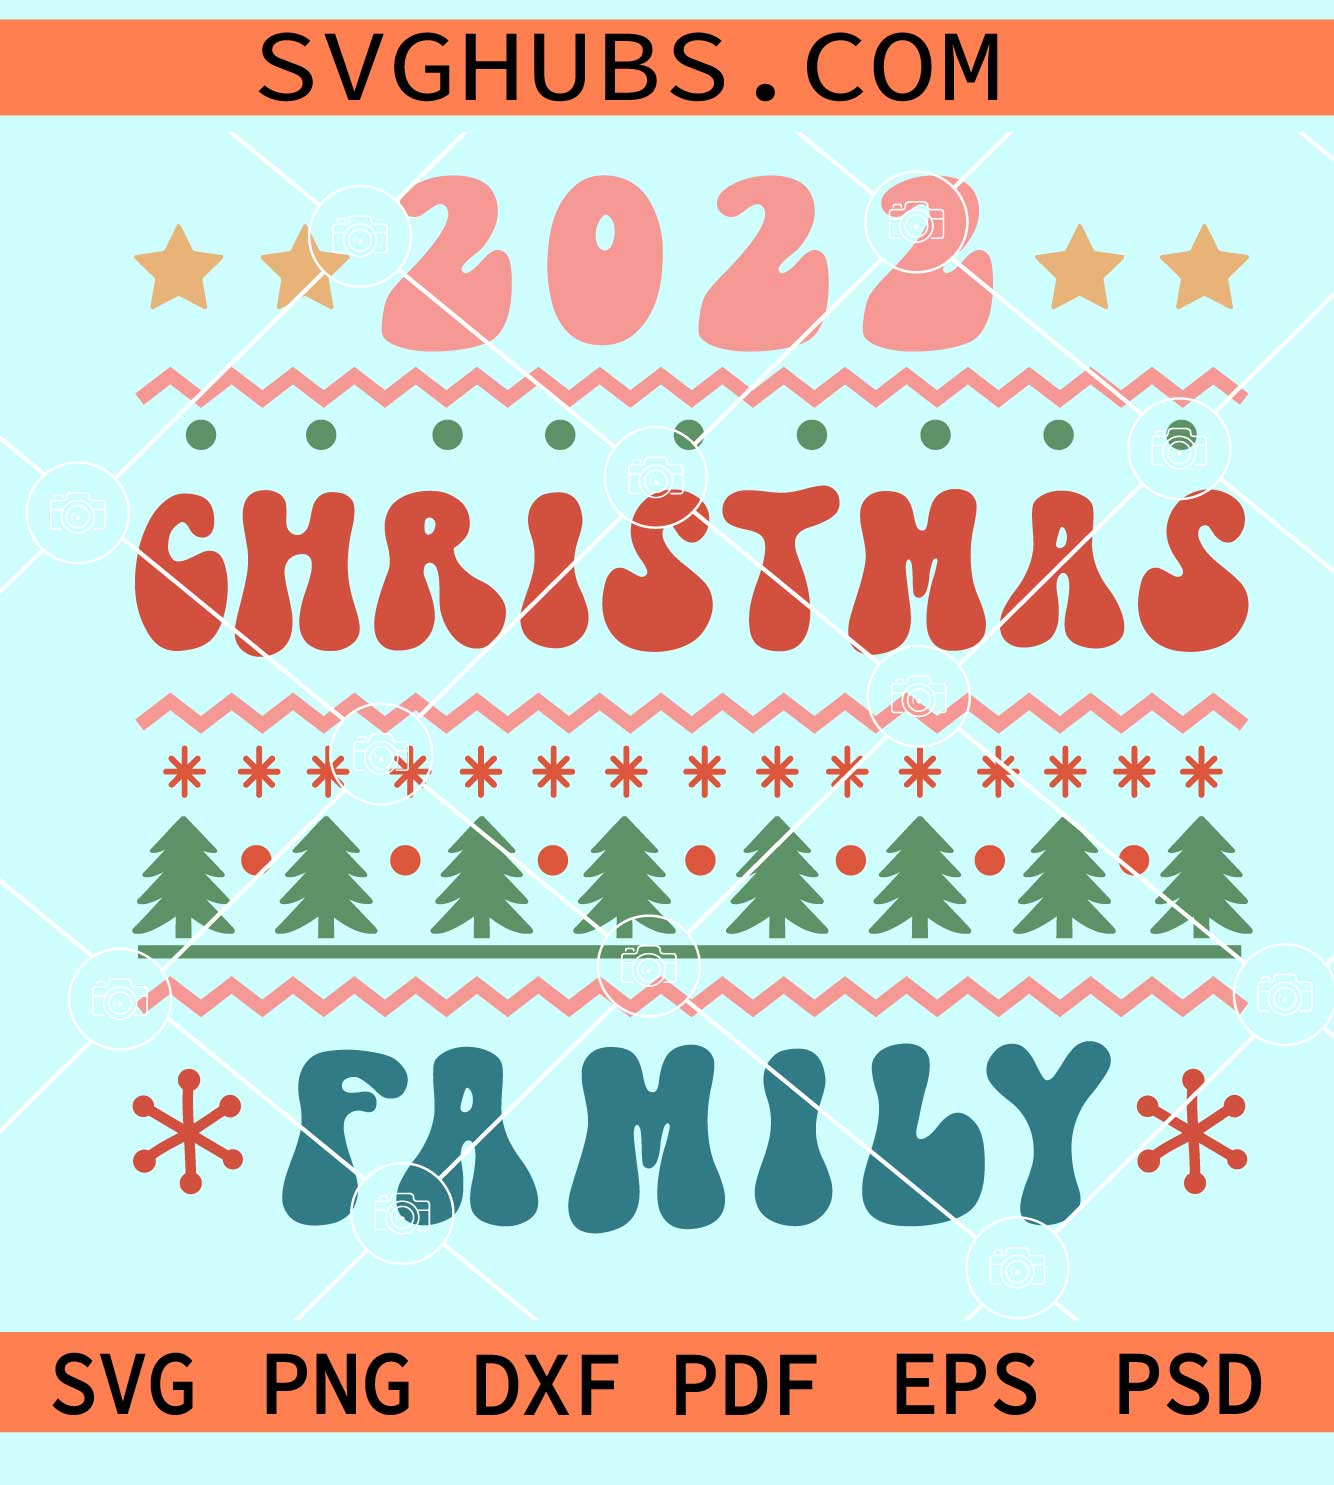 Christmas family 2022 svg, Family Christmas 2022 Shirt SVG, Christmas 2022 SVG